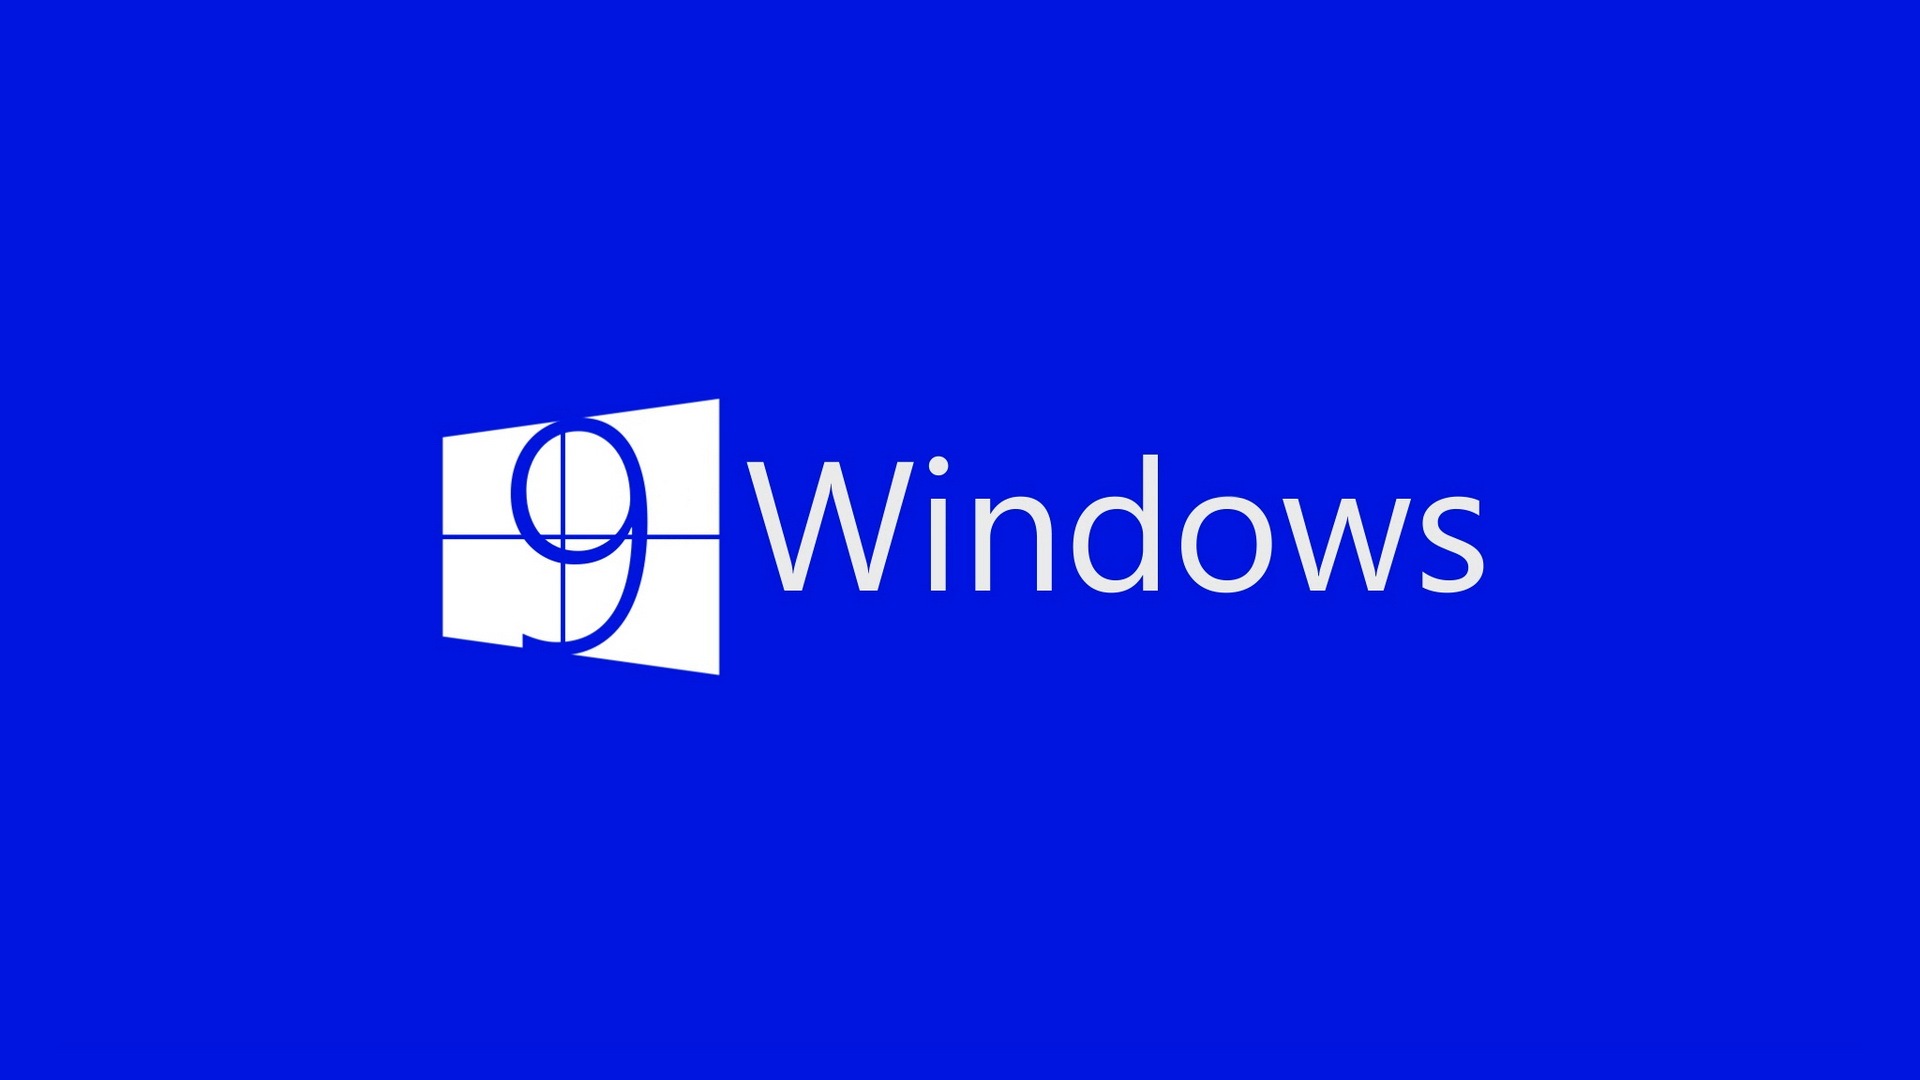 Microsoft Windowsの9システムテーマのHD壁紙 #4 - 1920x1080